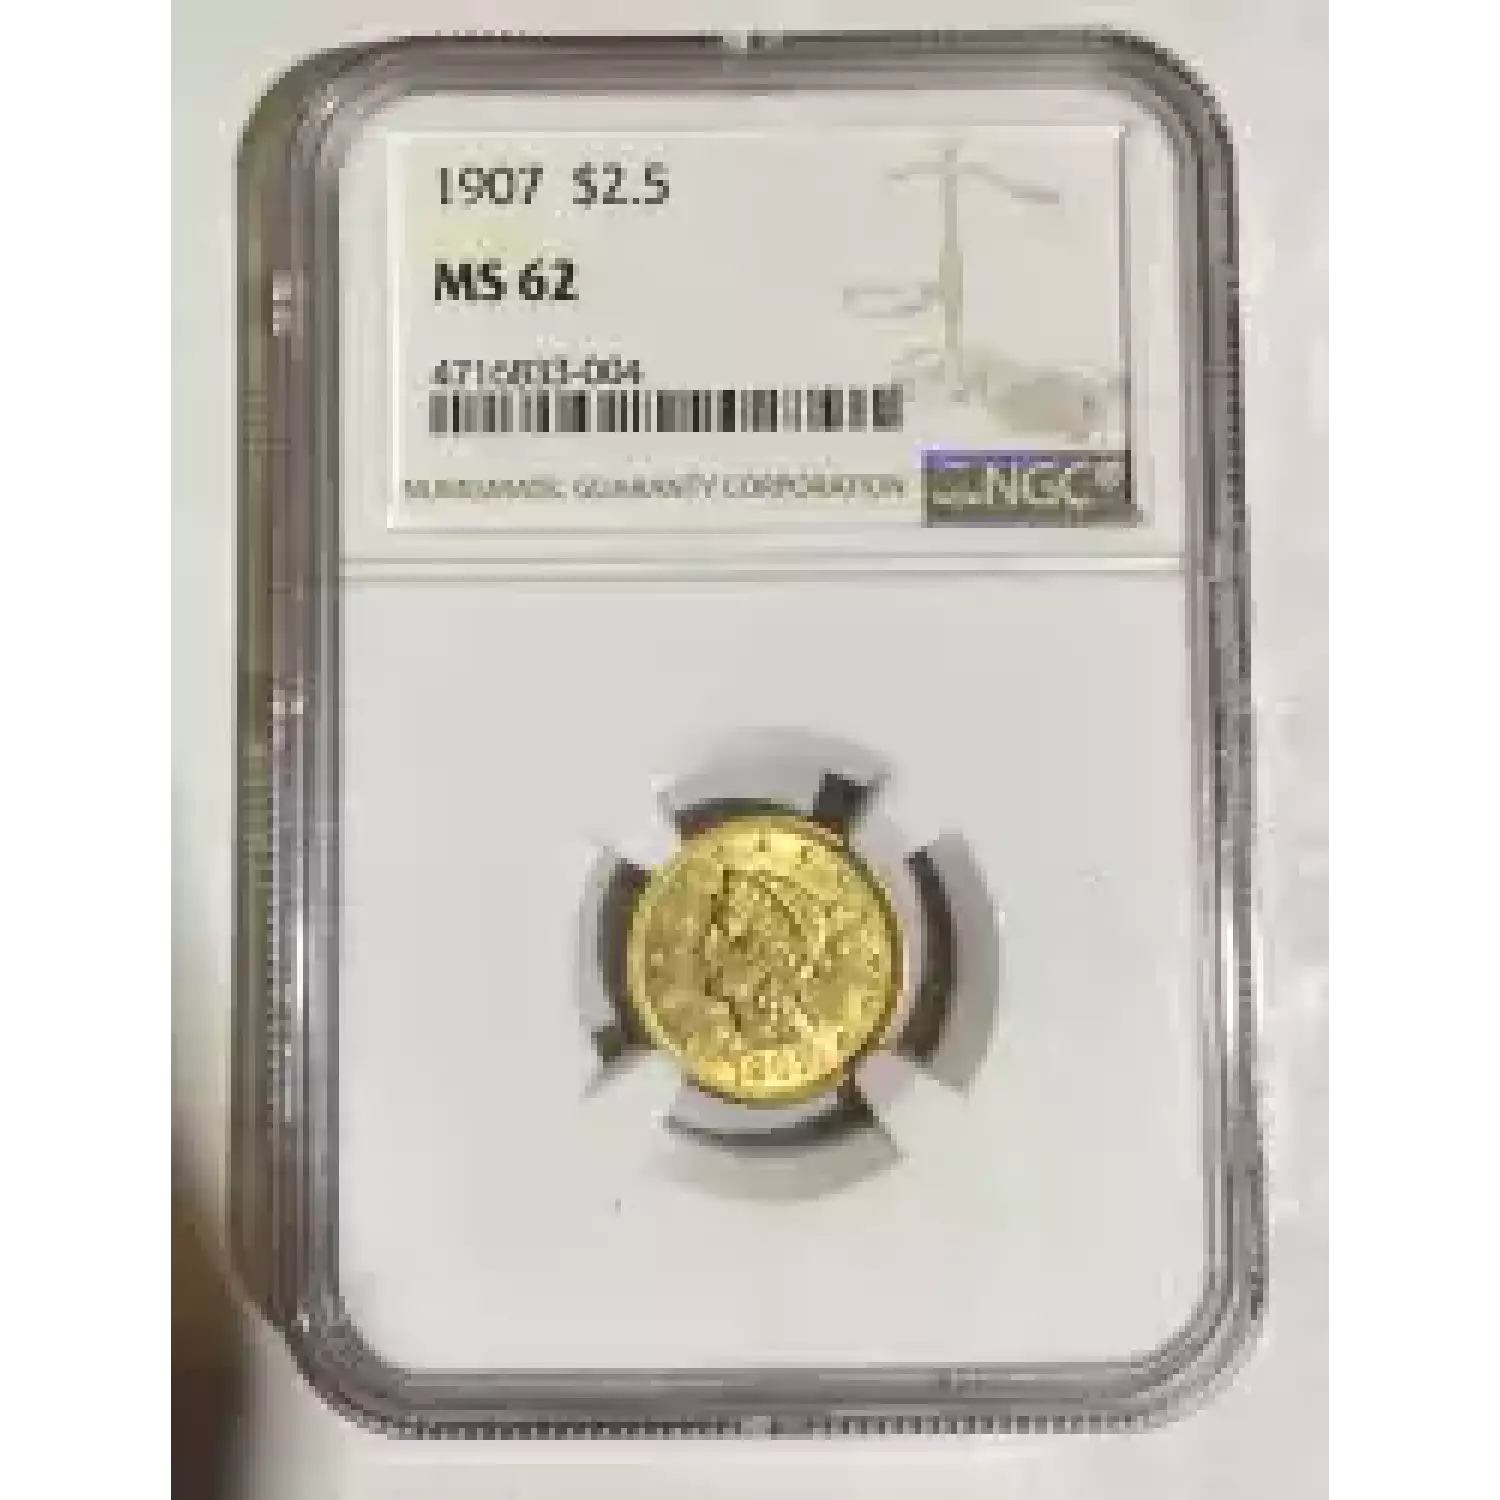 Quarter Eagles - Liberty Head 1840-1907 - Gold - 2.5 Dollar